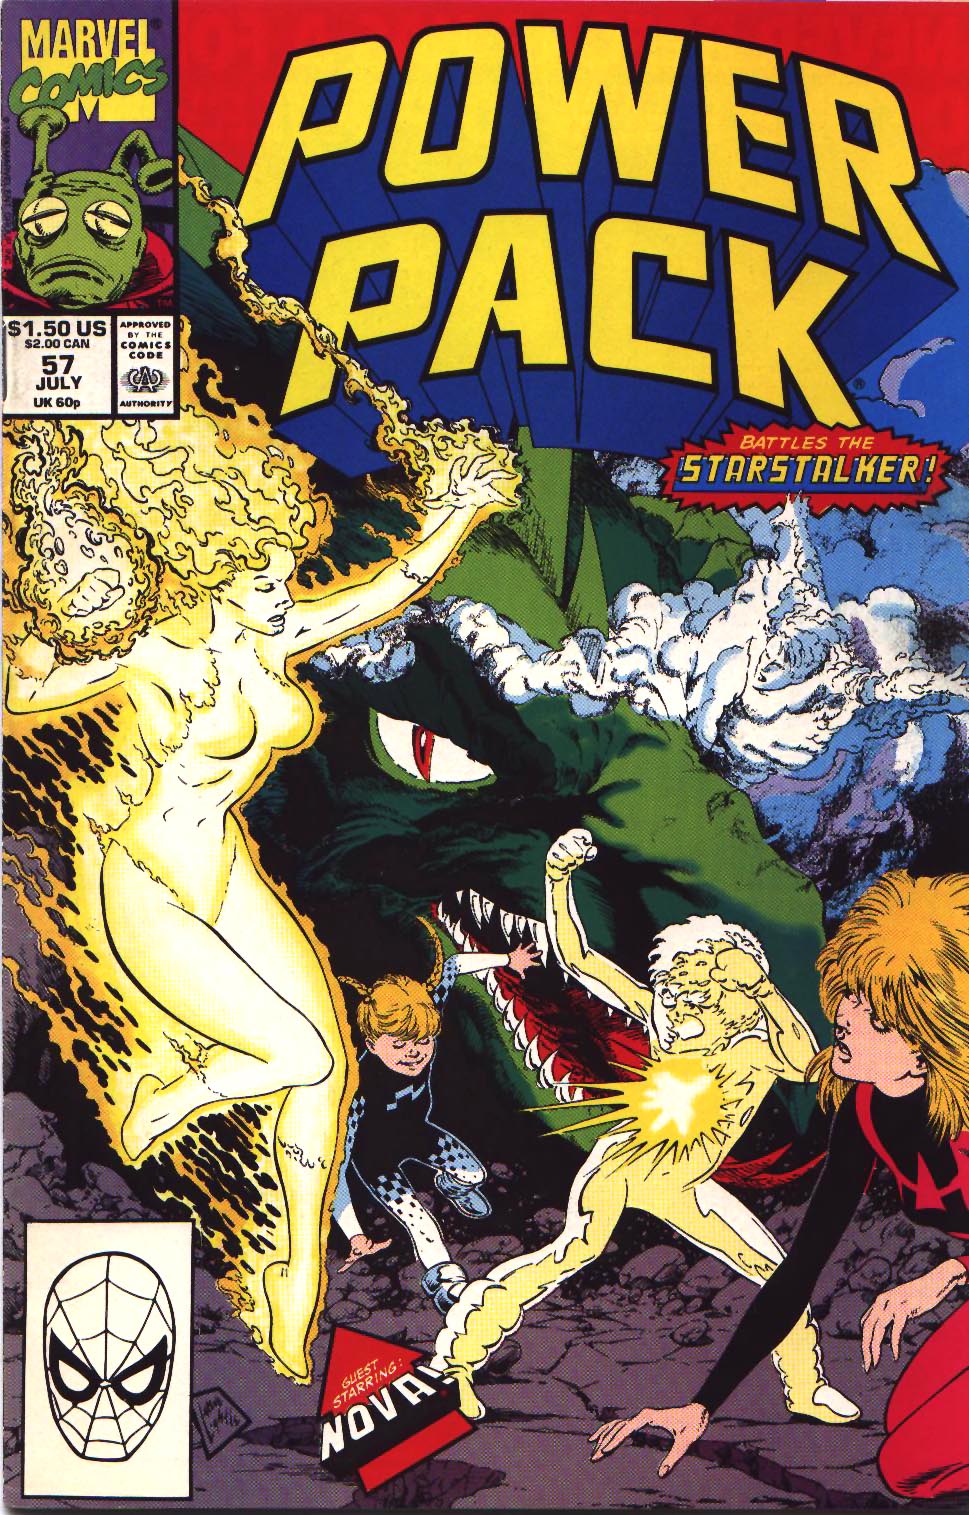 Power Pack комикс. POWERPACK комиксы. Power Pack Marvel Vintage. Power packing комиксы